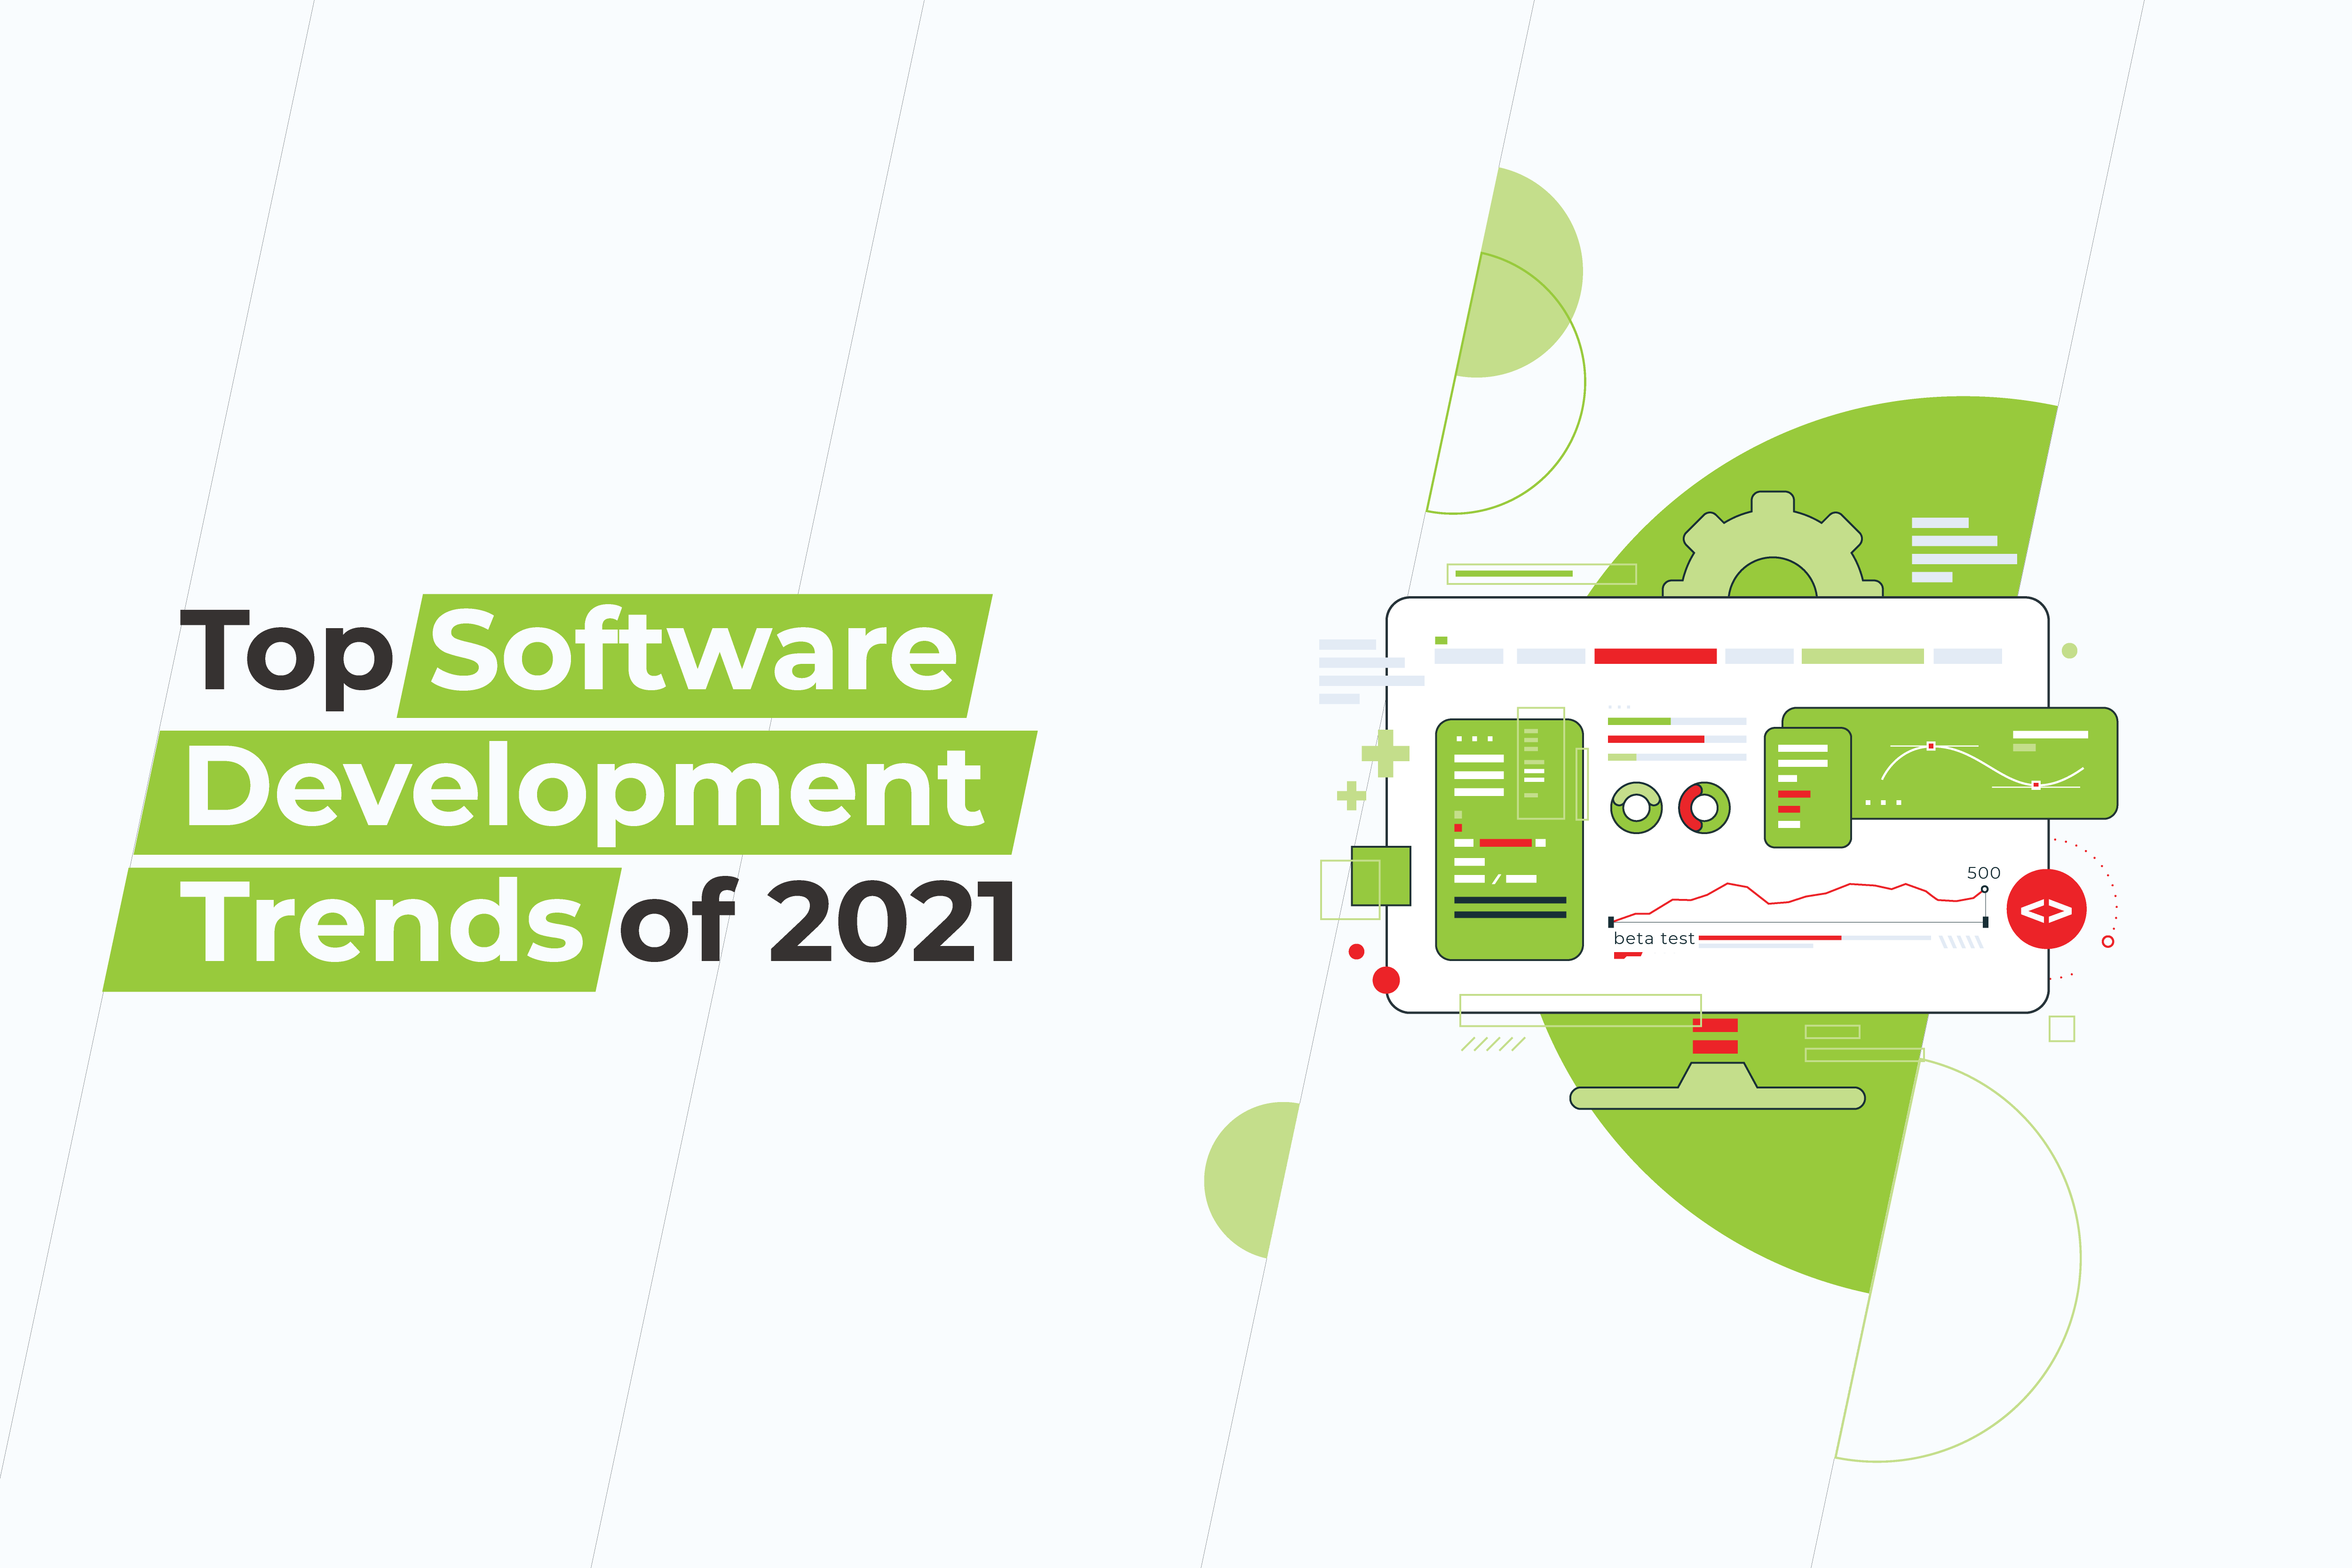 Top Software Development Trends Of 2021